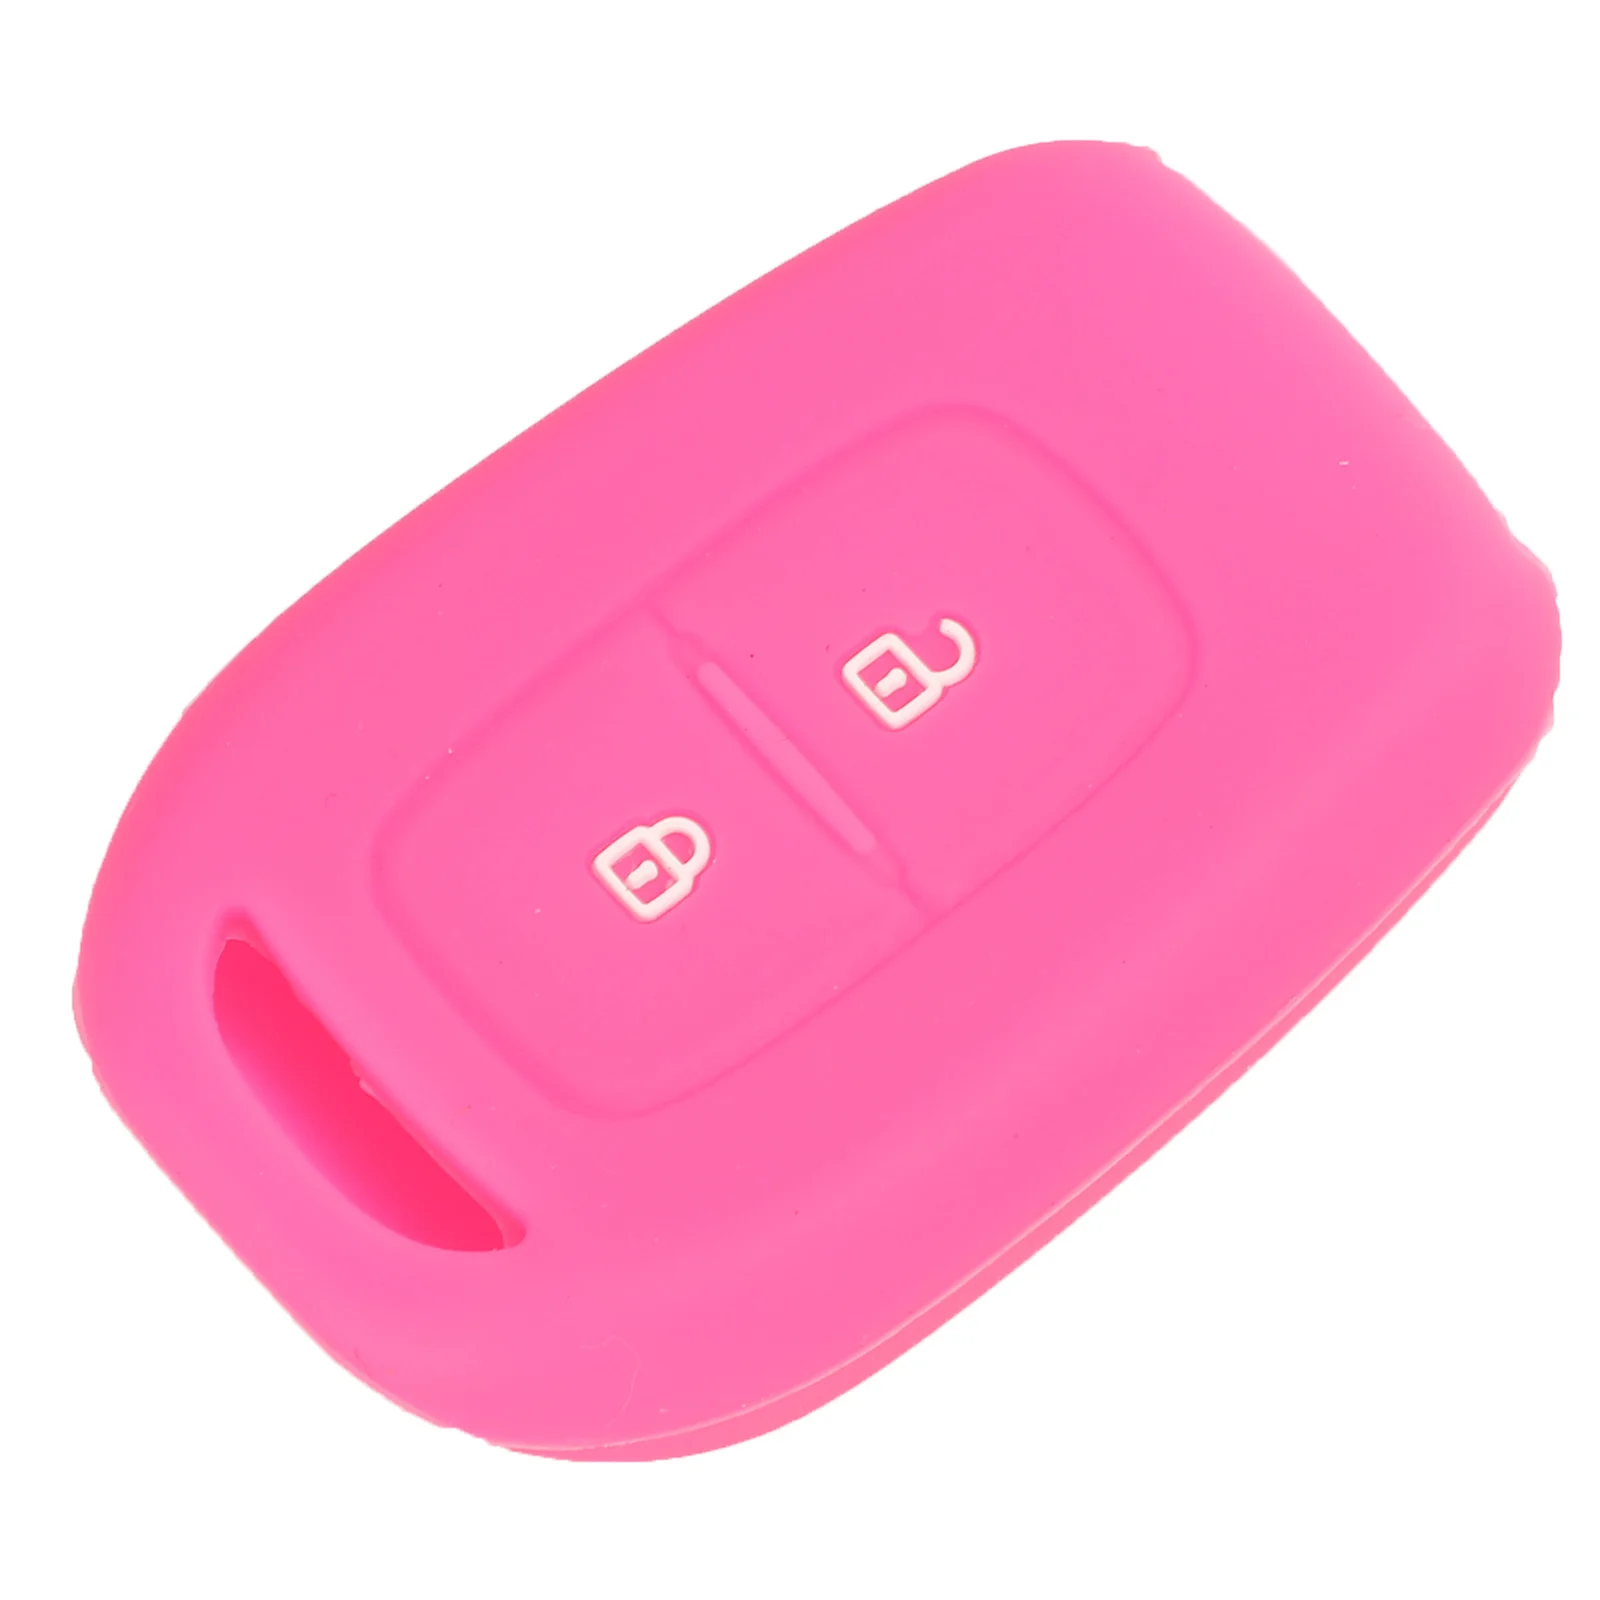 Jingyuqin 2 кнопки силиконовый чехол для ключей для Renault Scenic Master Megane Duster Logan Clio Captur Laguna Fluence чехол дистанционного брелока - Название цвета: Hot Pink